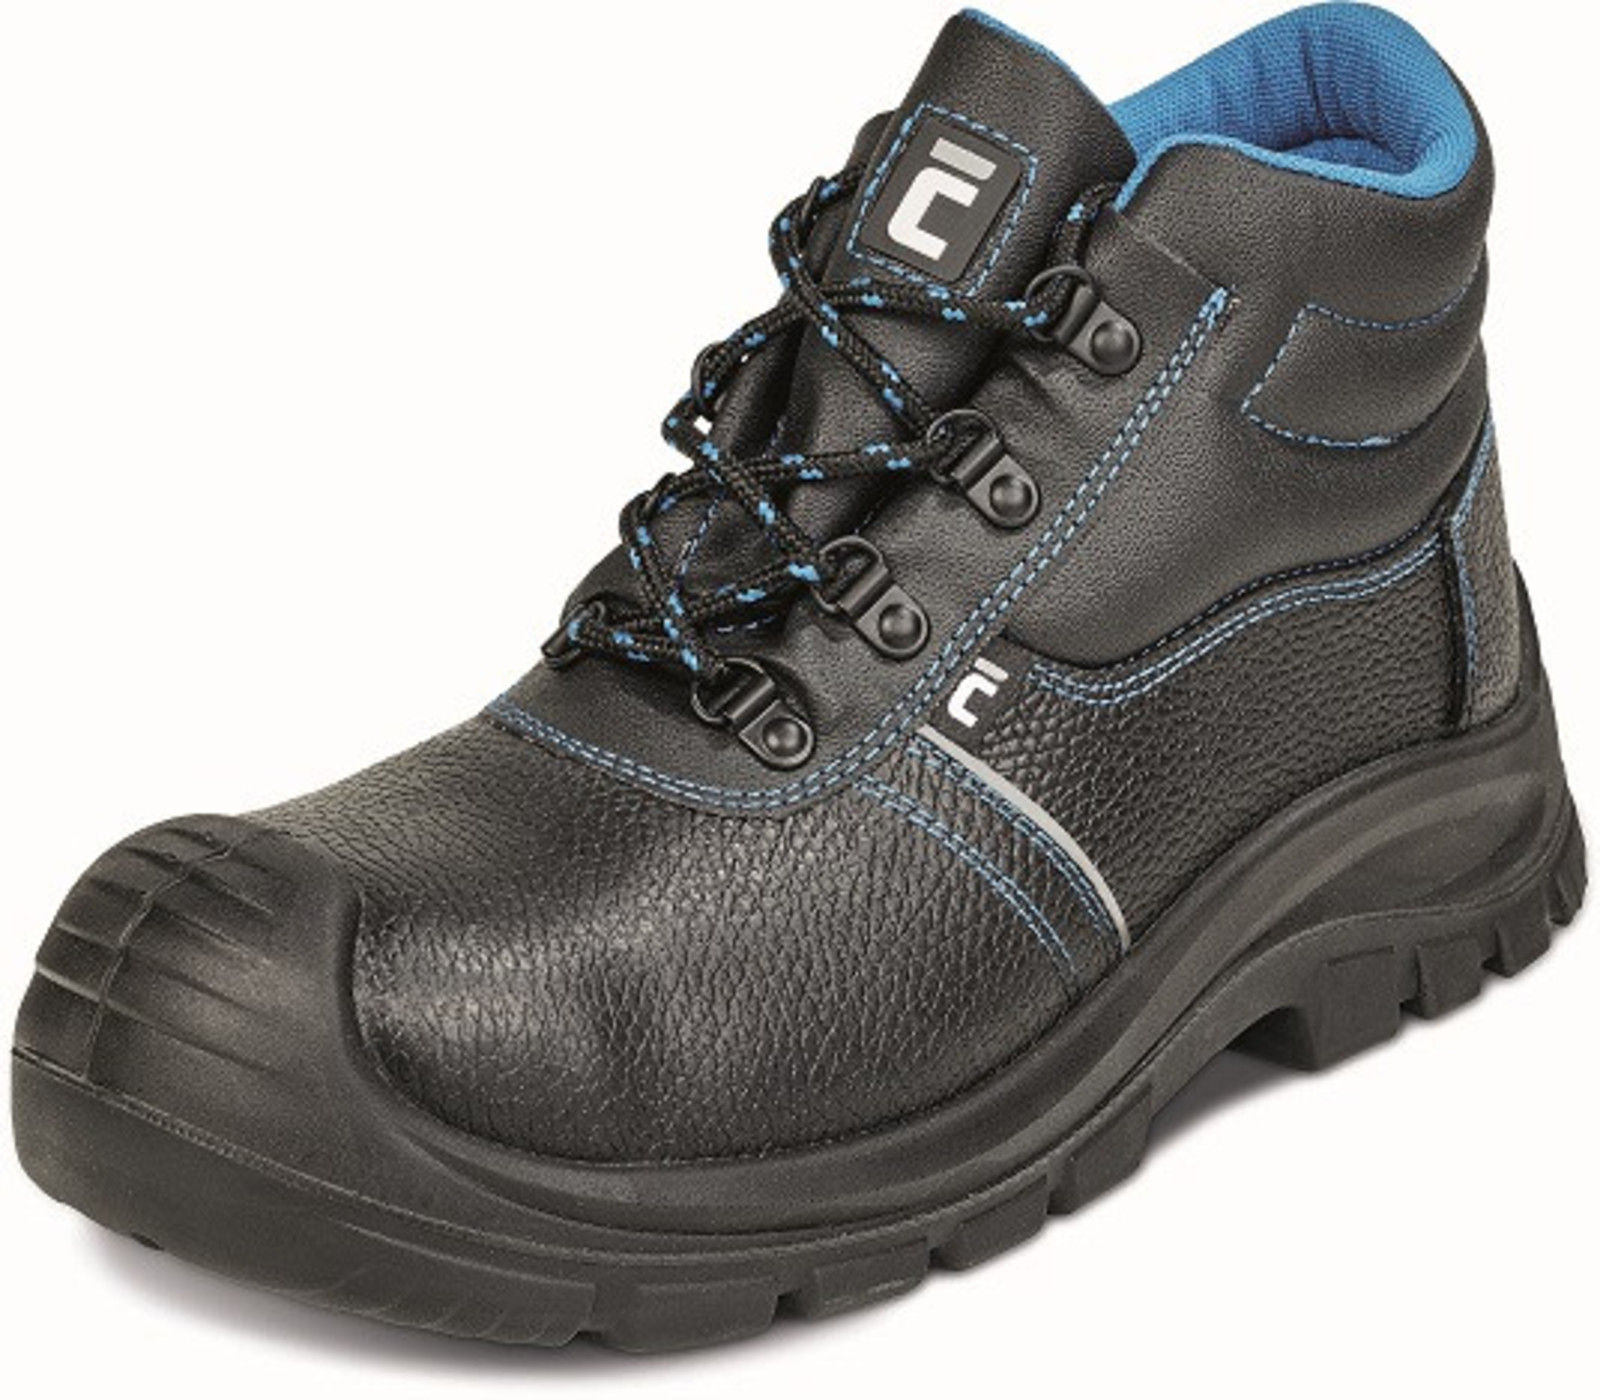 Bezpečnostná obuv Raven XT S1P - veľkosť: 46, farba: čierna